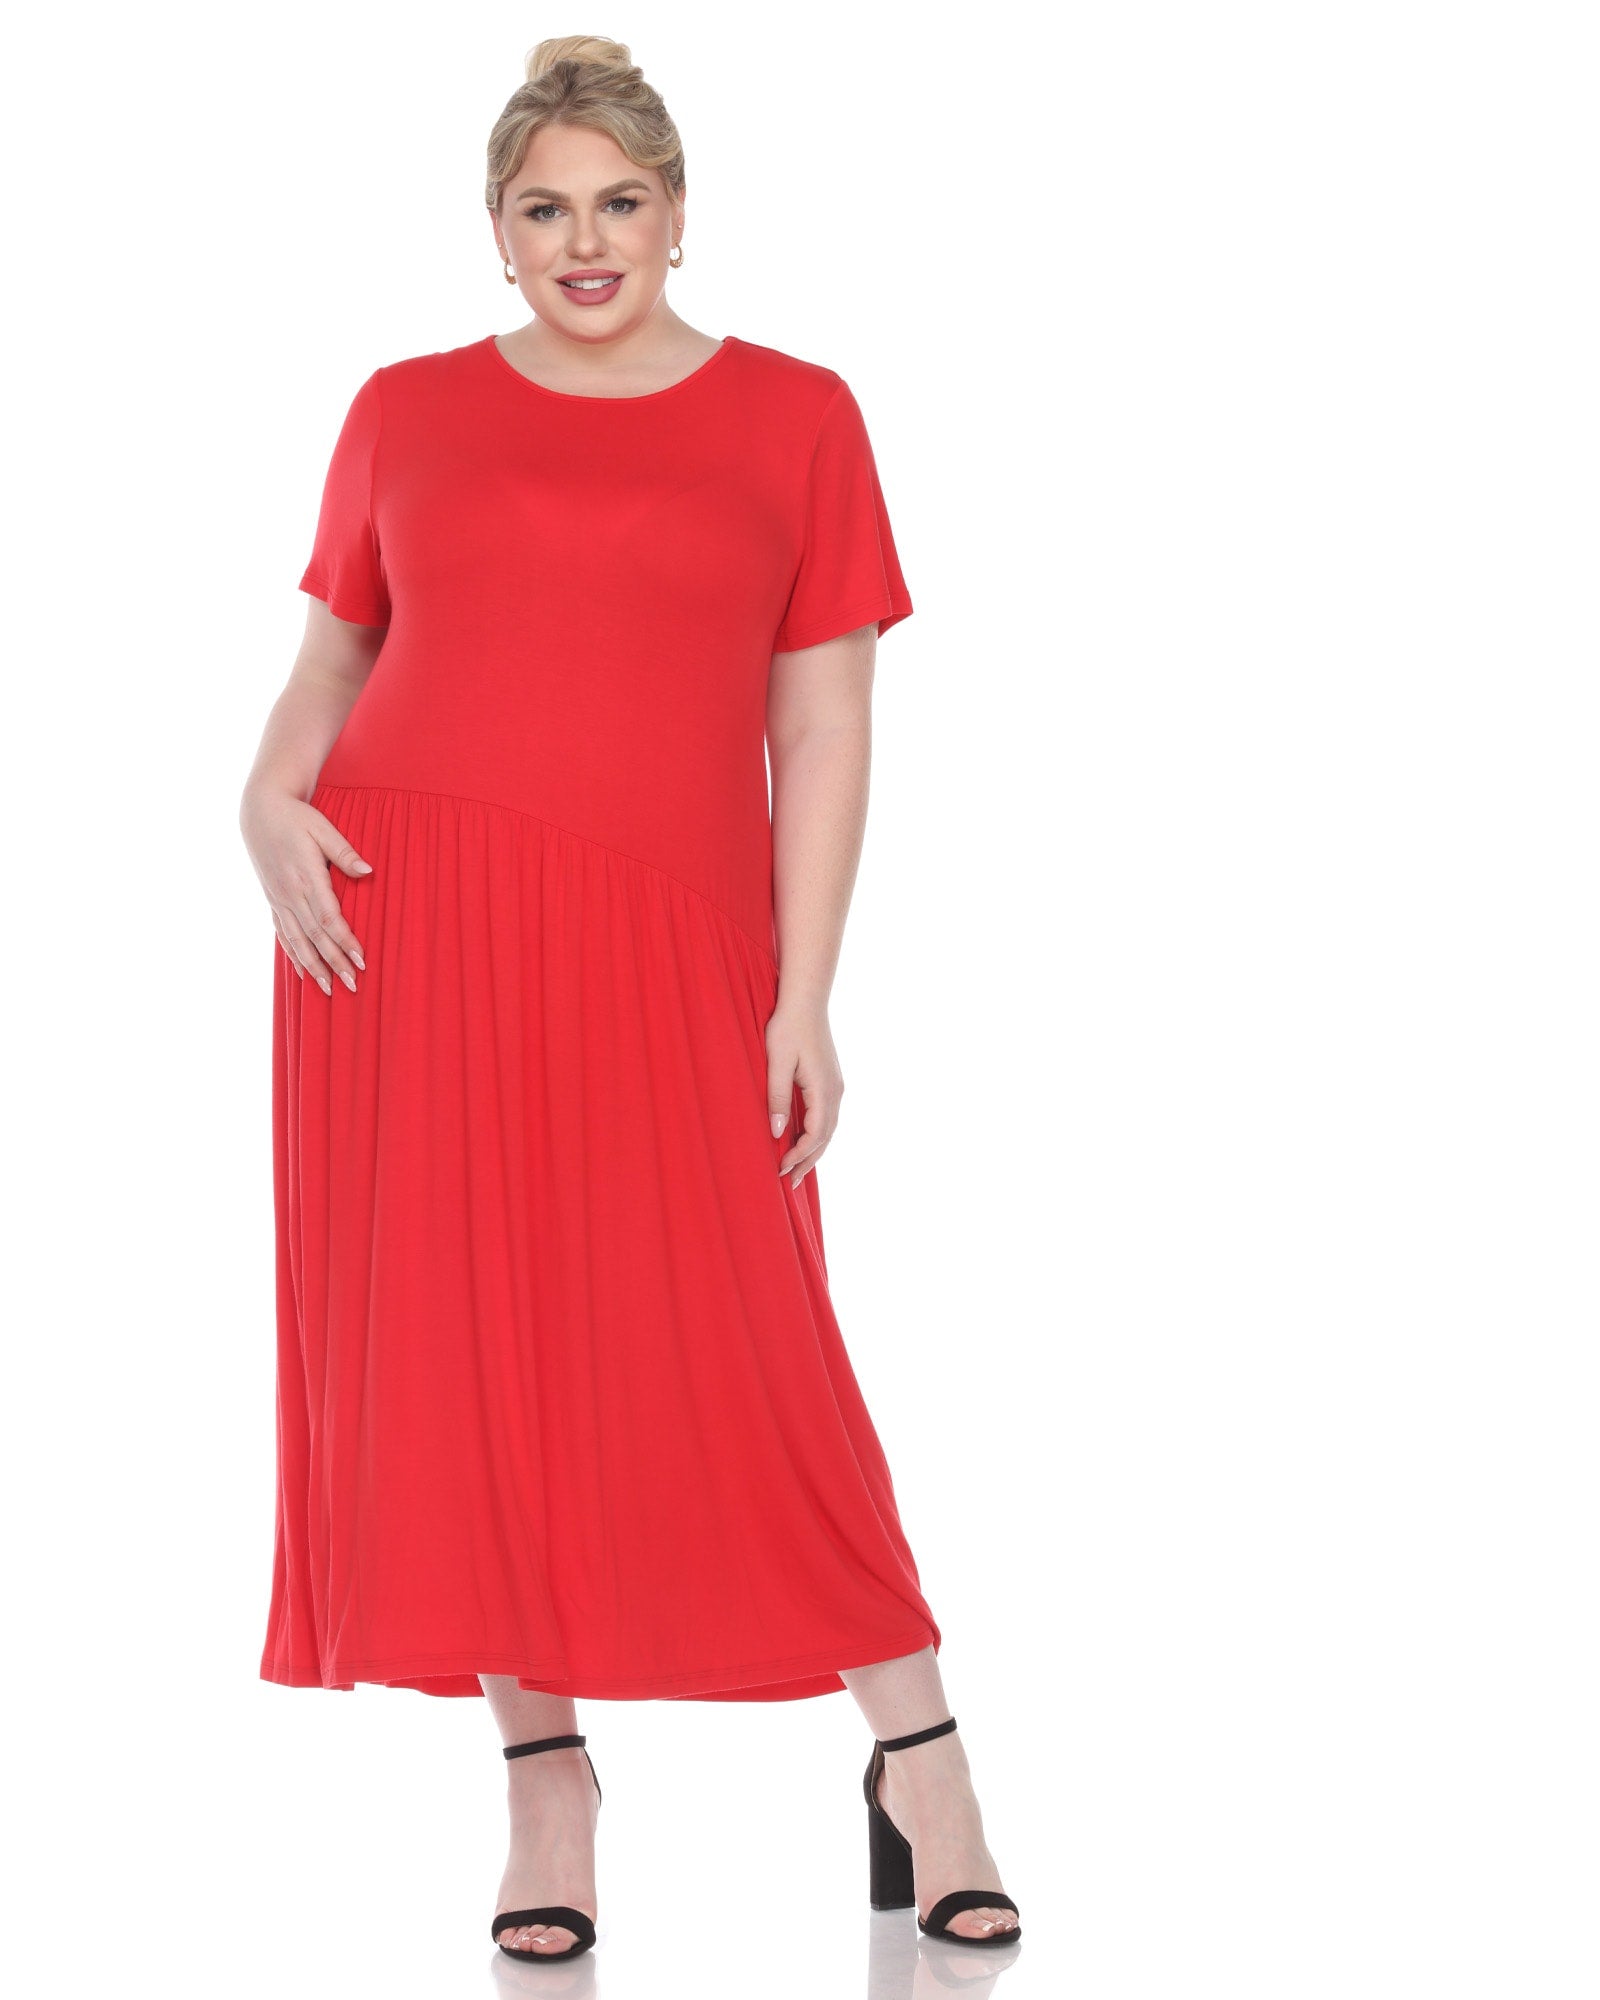 Red Flowy Dress